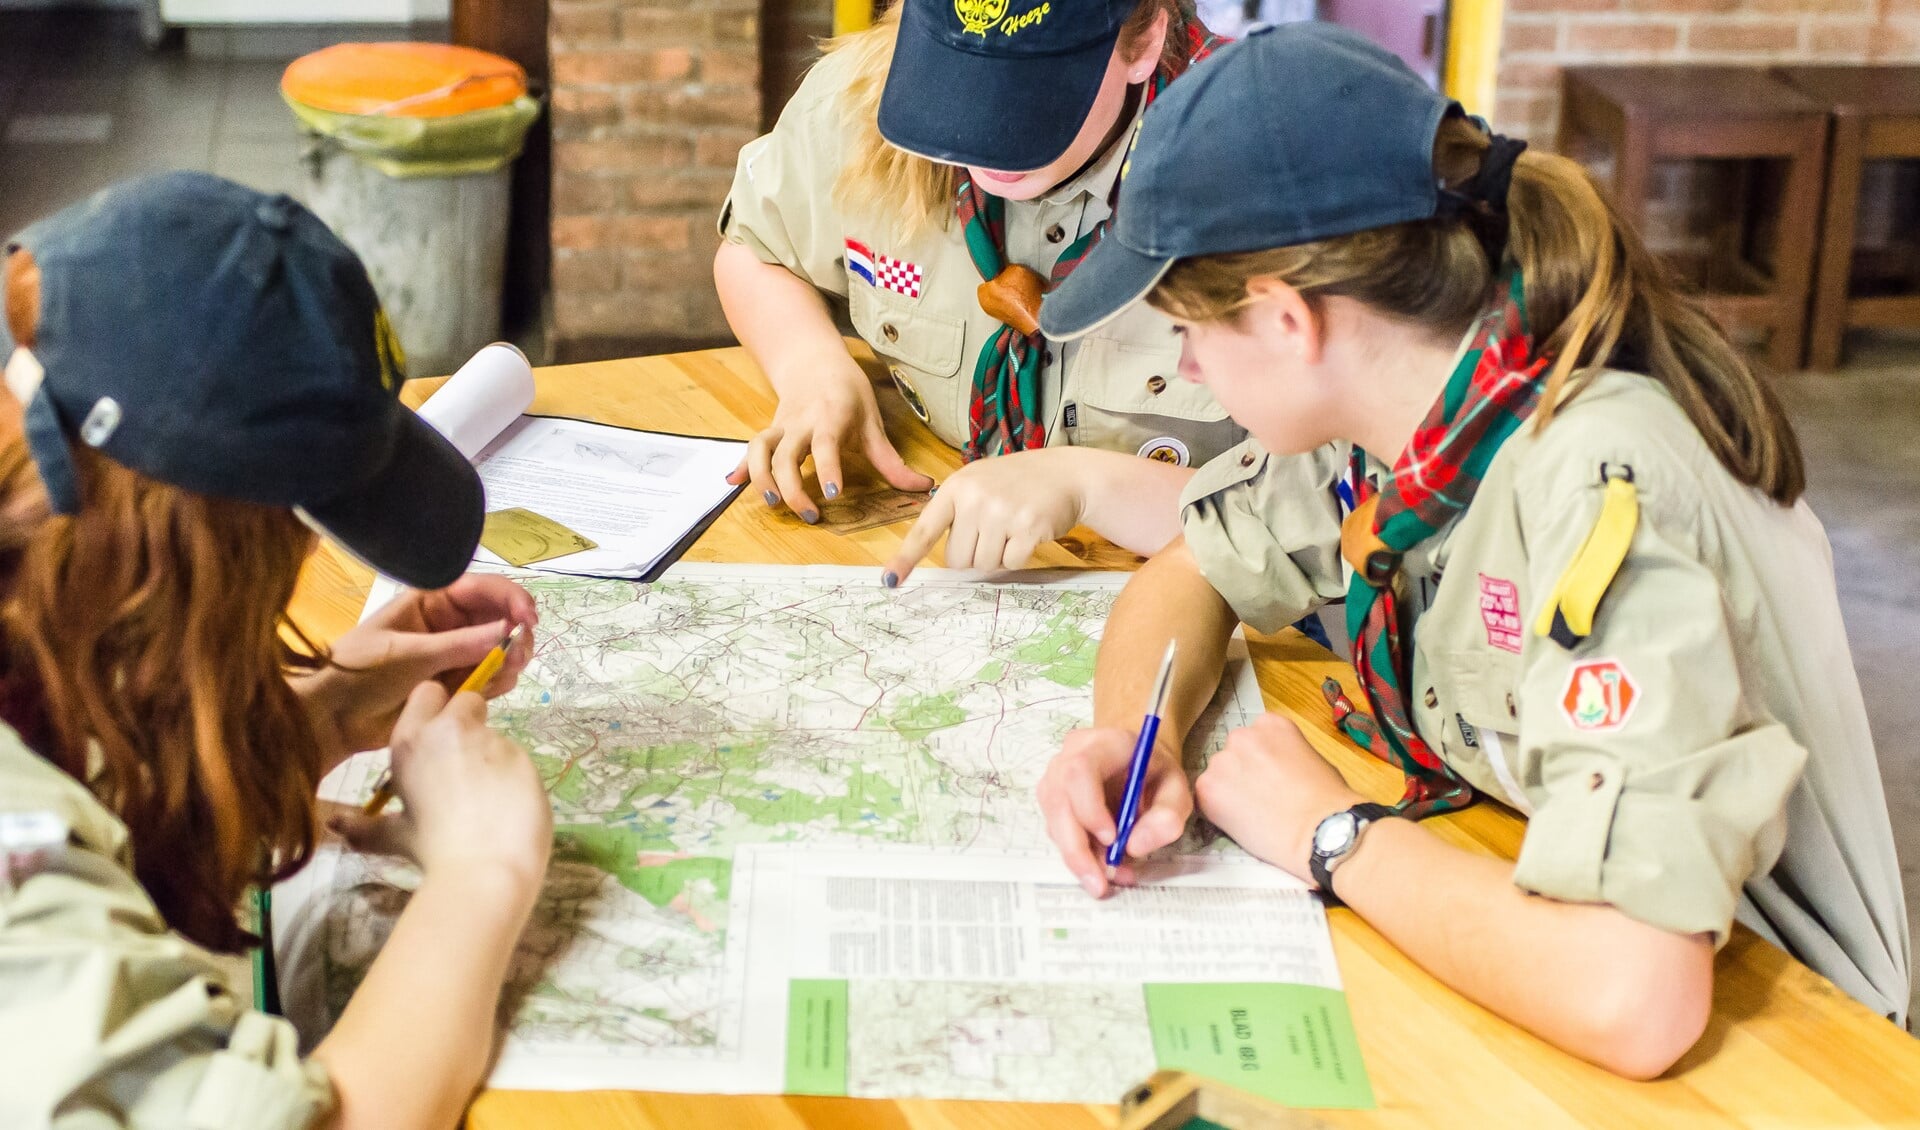 Bij Scouting Heeze krijg je leerzame en uitdagende opdrachten. (Foto: Egon van der Linden)